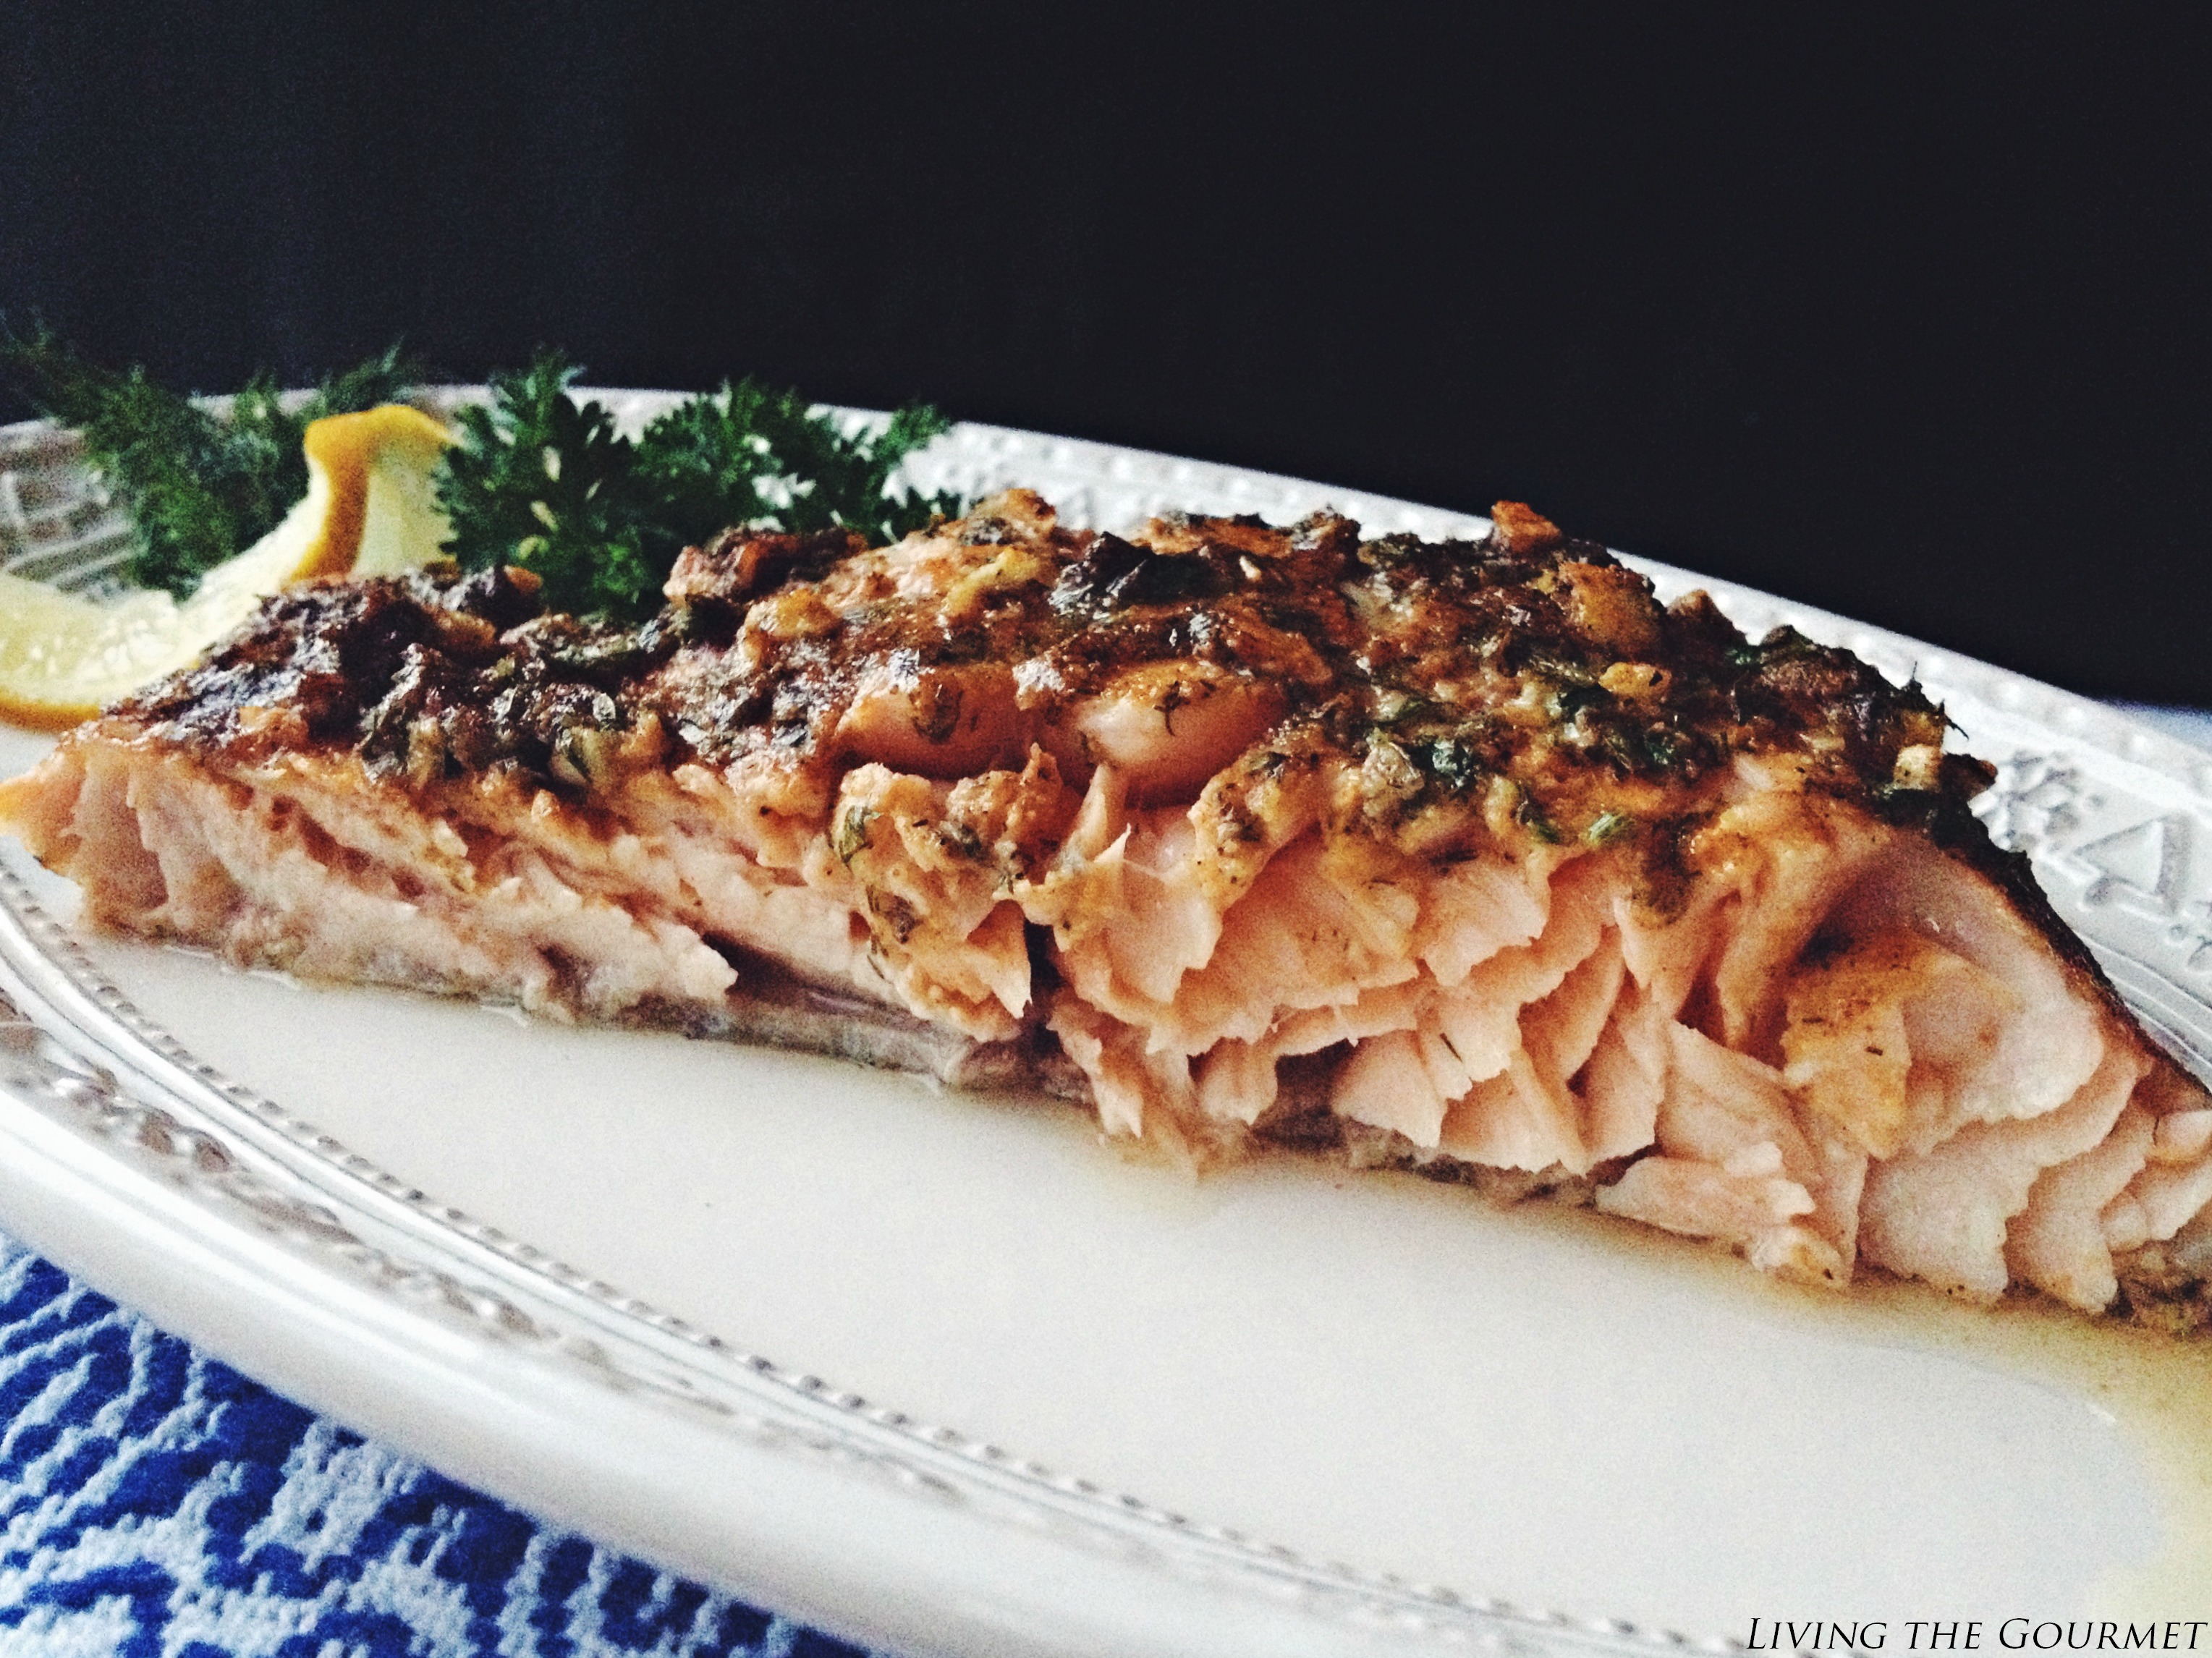 Living the Gourmet: Fresh Baked Salmon Filet